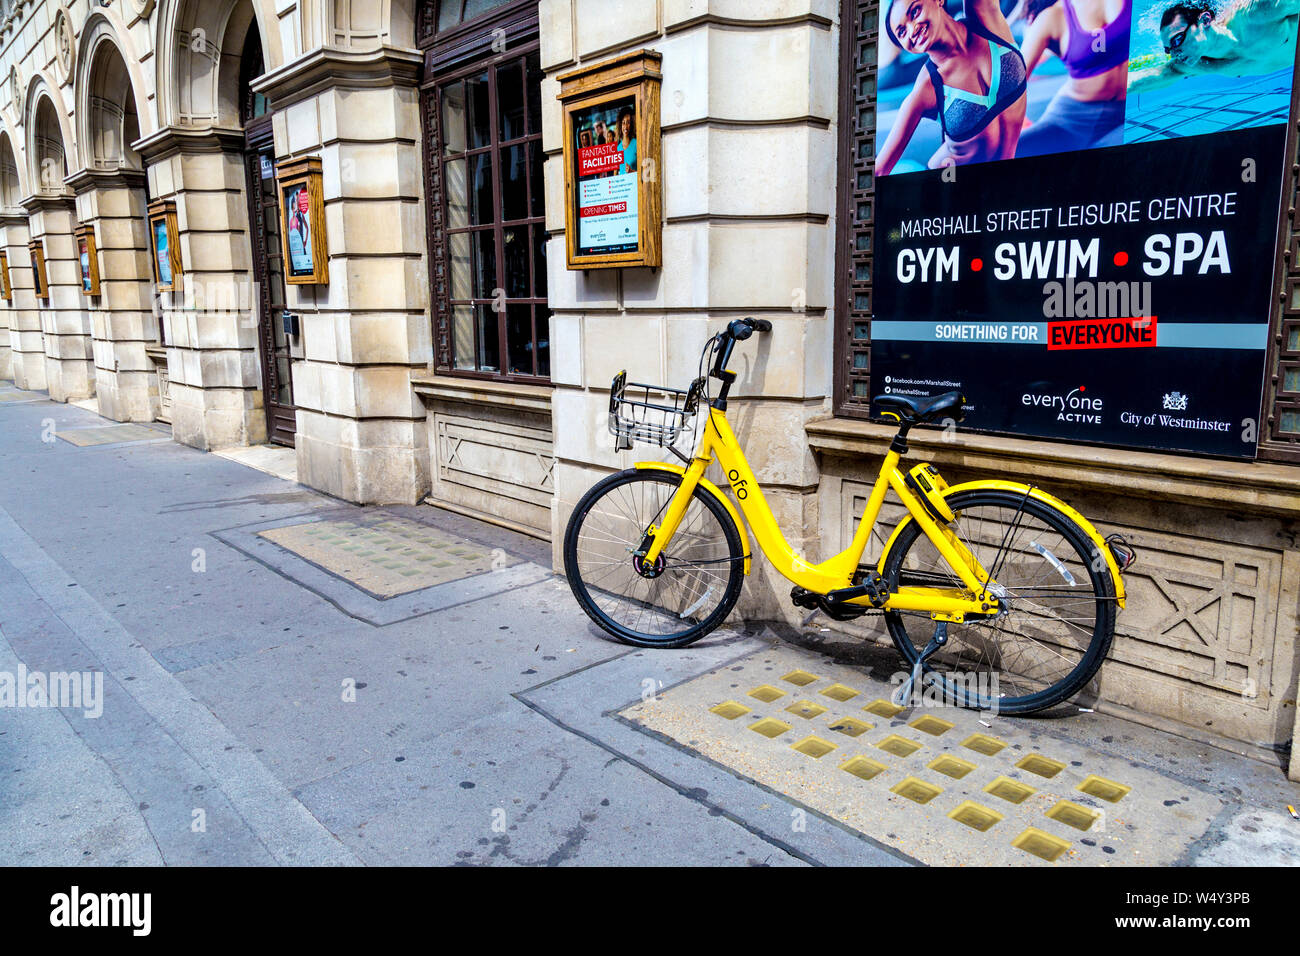 Gelbe Fahrradverleih dockless ofo Fahrrad auf der Straße geparkt, London, UK Stockfoto